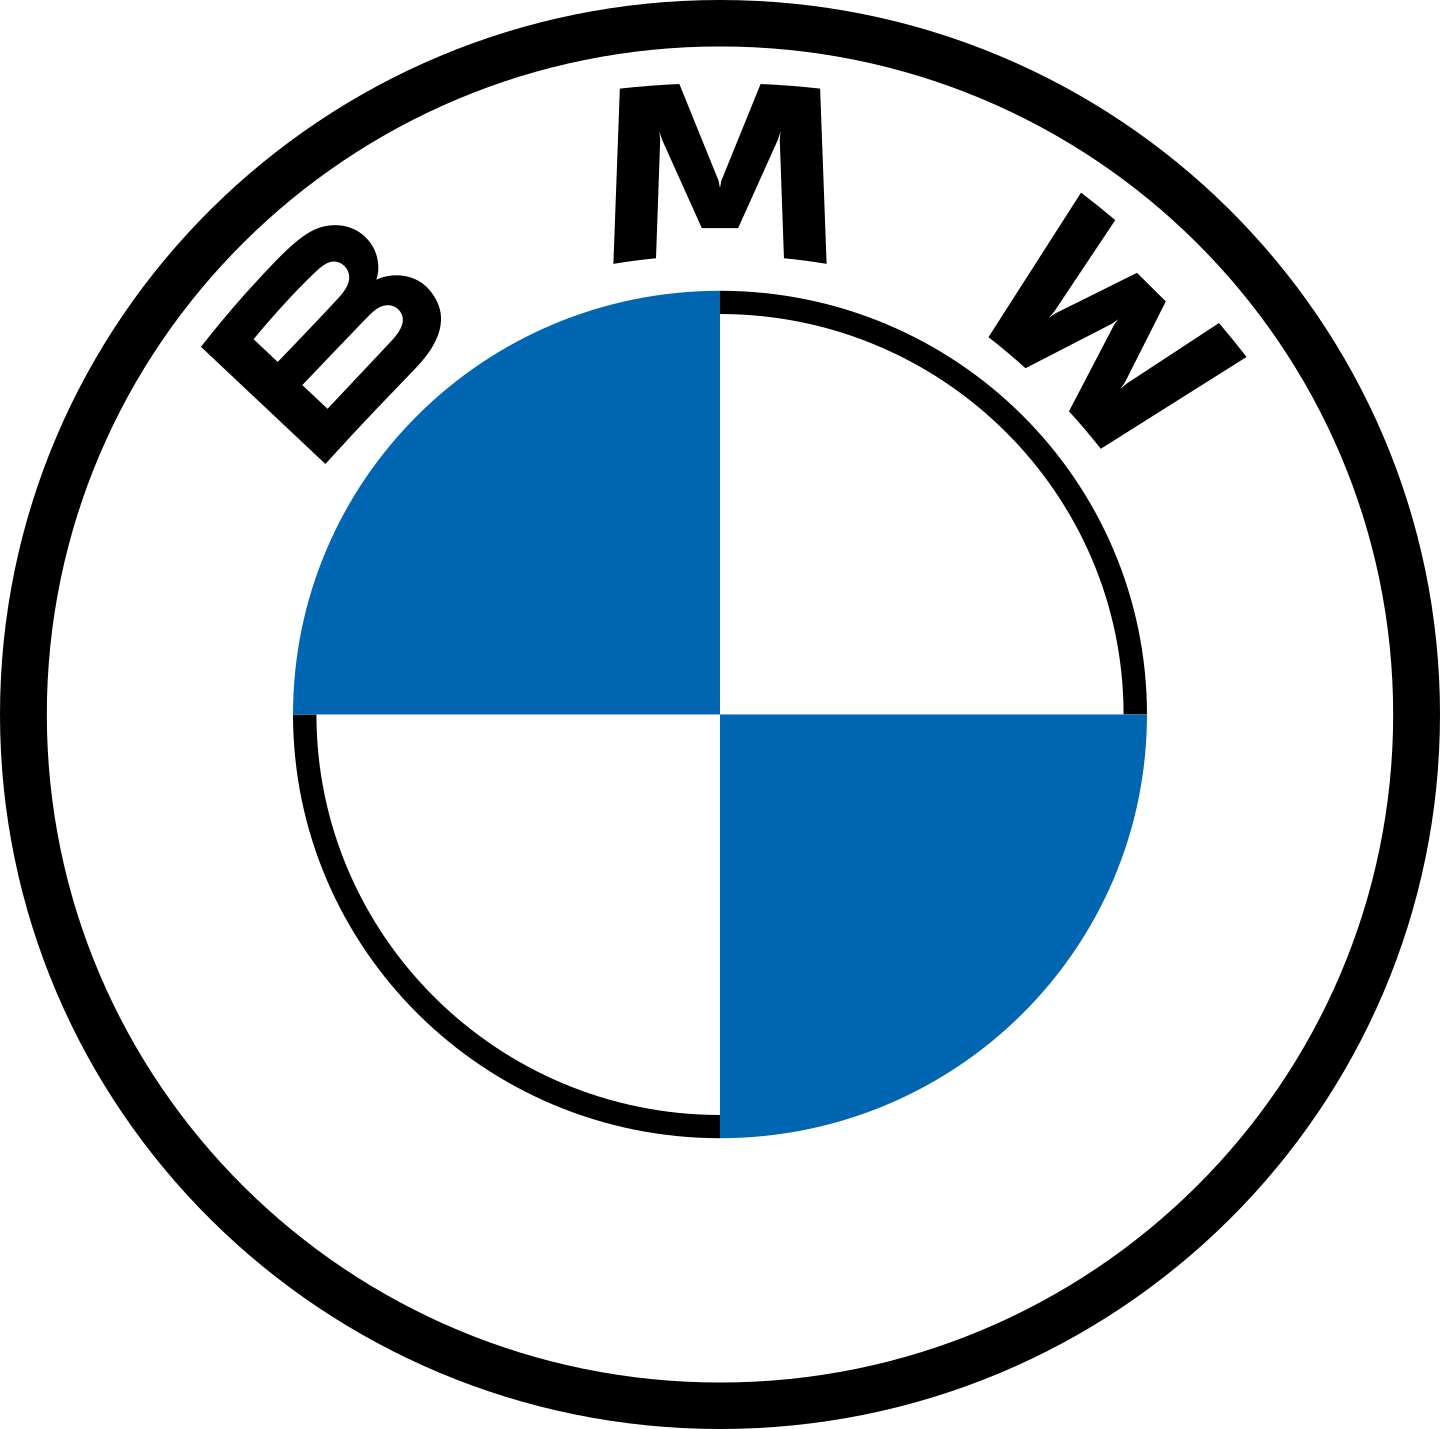 bmw logo 2 1 - BMW Logo